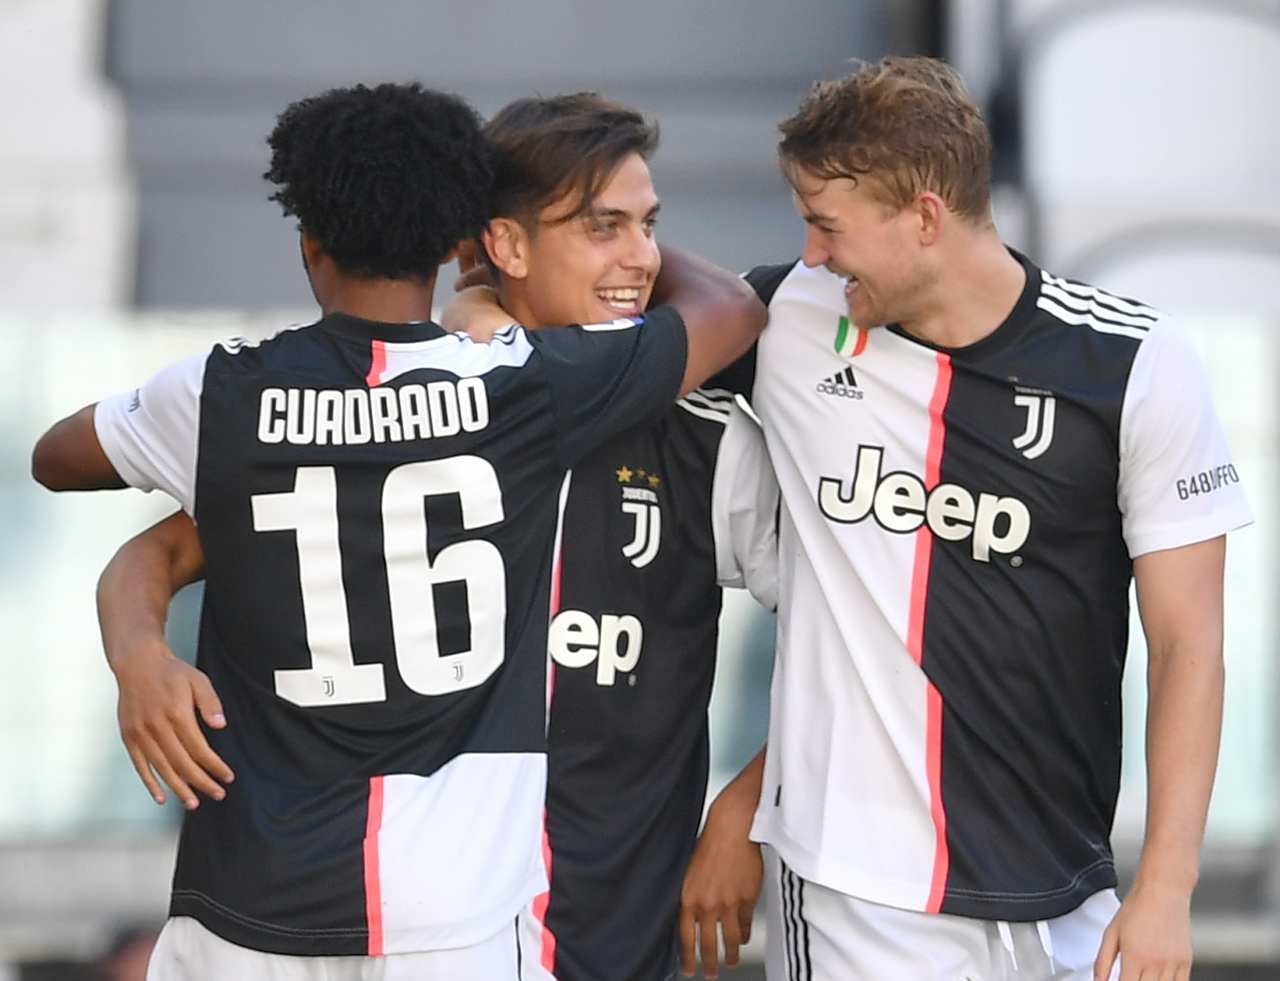 Calciomercato Juventus Dybala